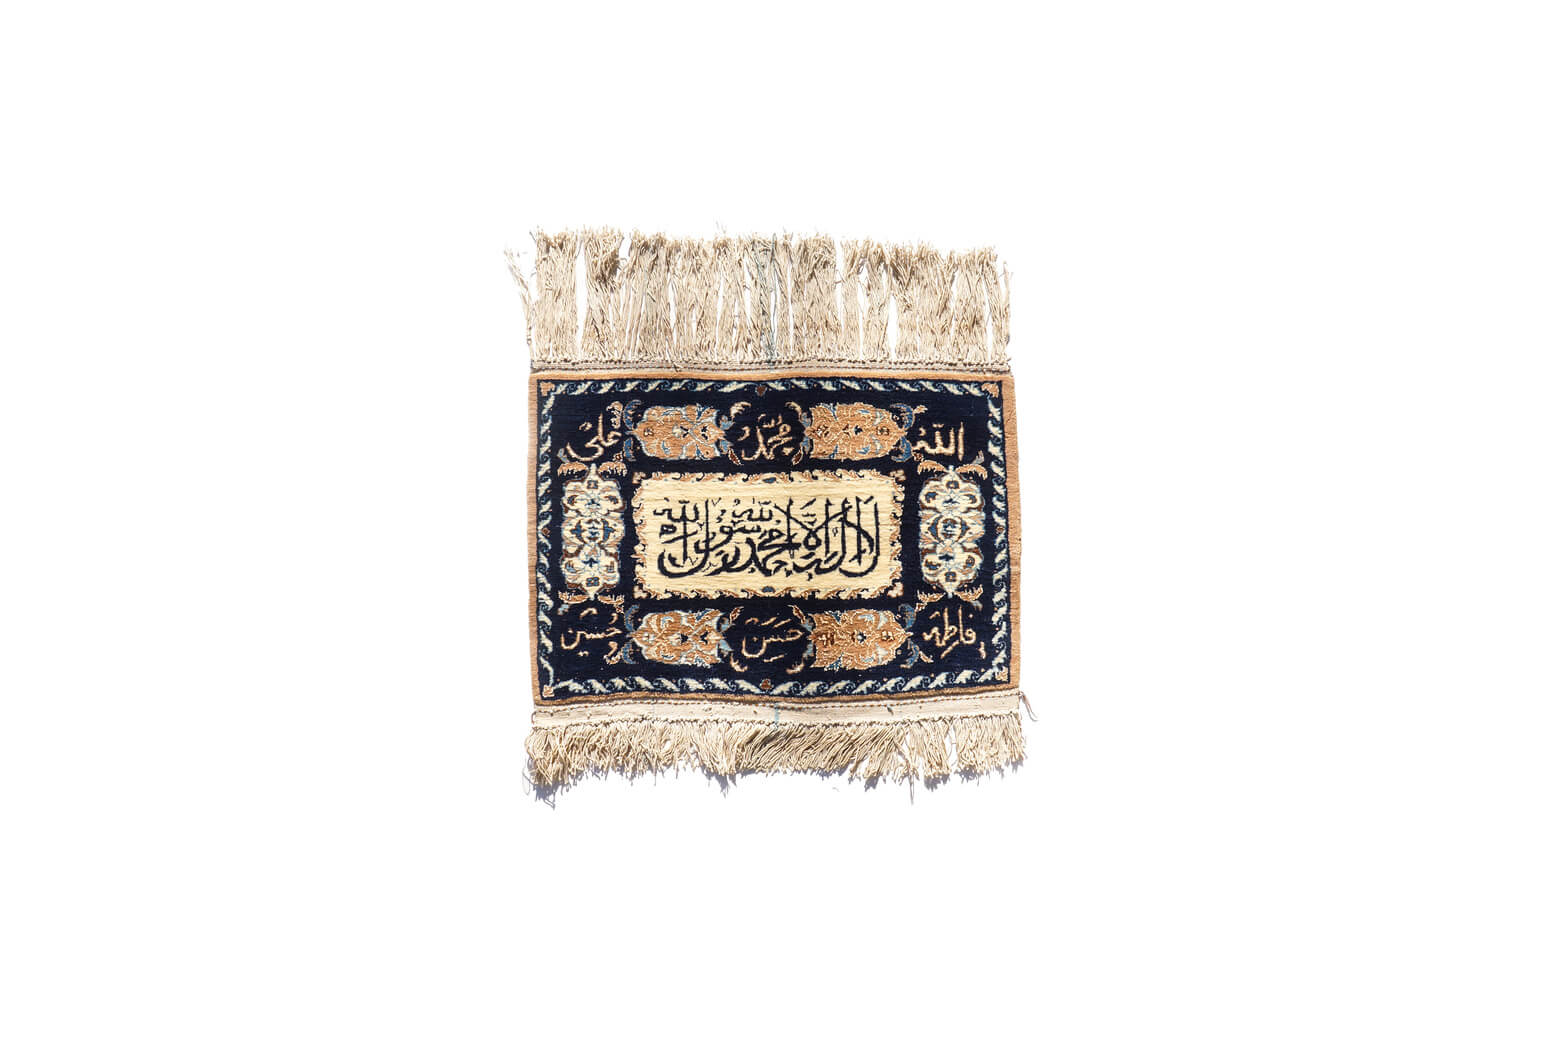 アラビア 文字 ラグ ヴィンテージインテリア/Arabic letters Vintage